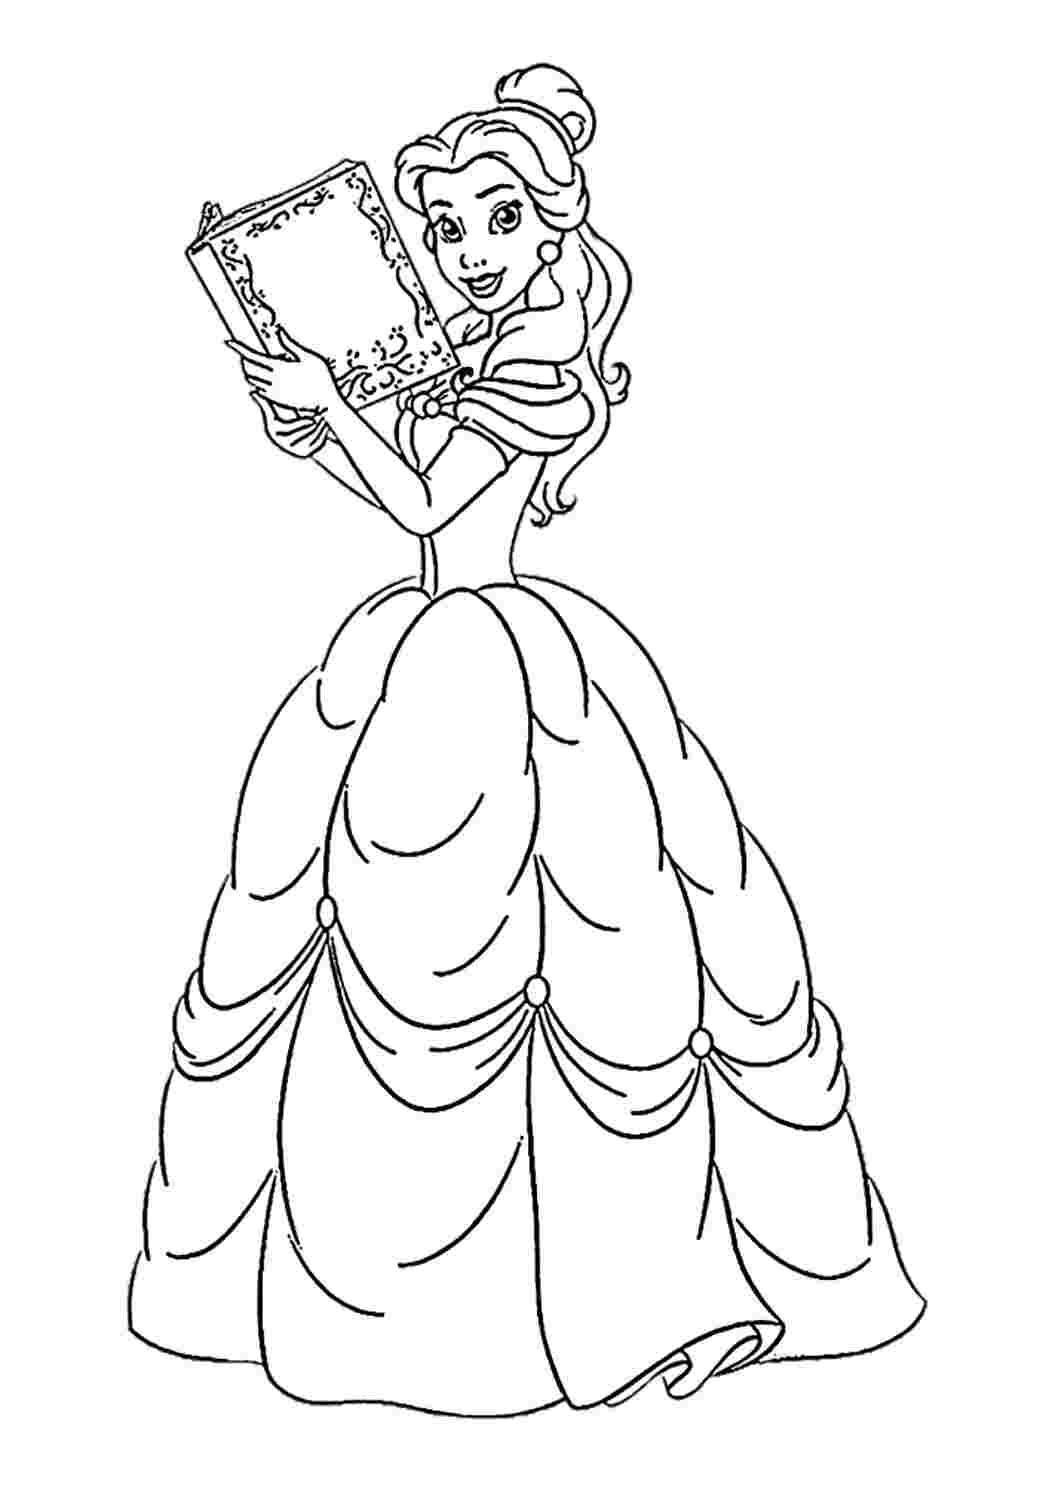 Принцесса Белль - Принцессы Дисней - Раскраски антистресс